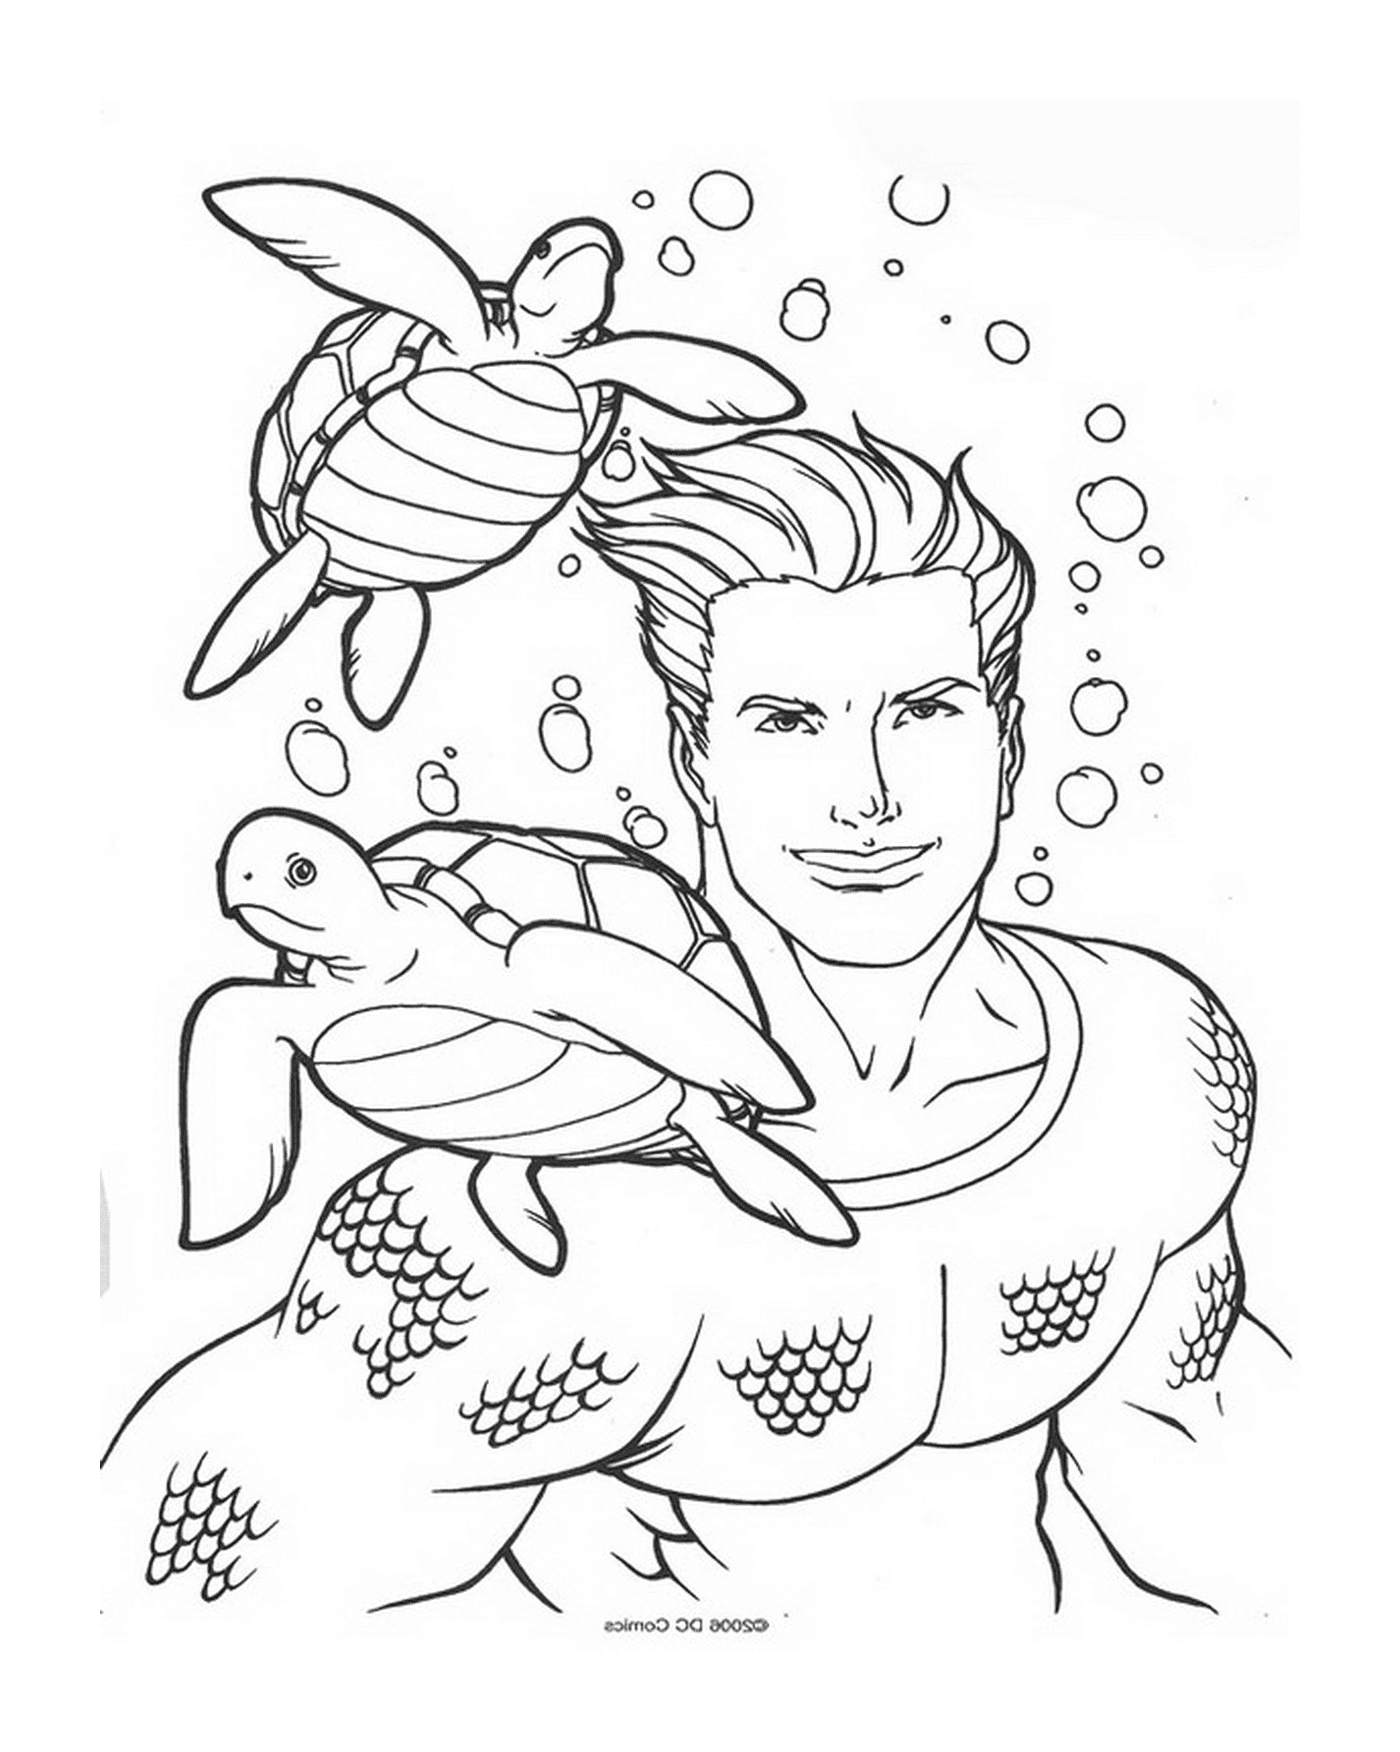  Un uomo e una tartaruga che nuotano nell'acqua 